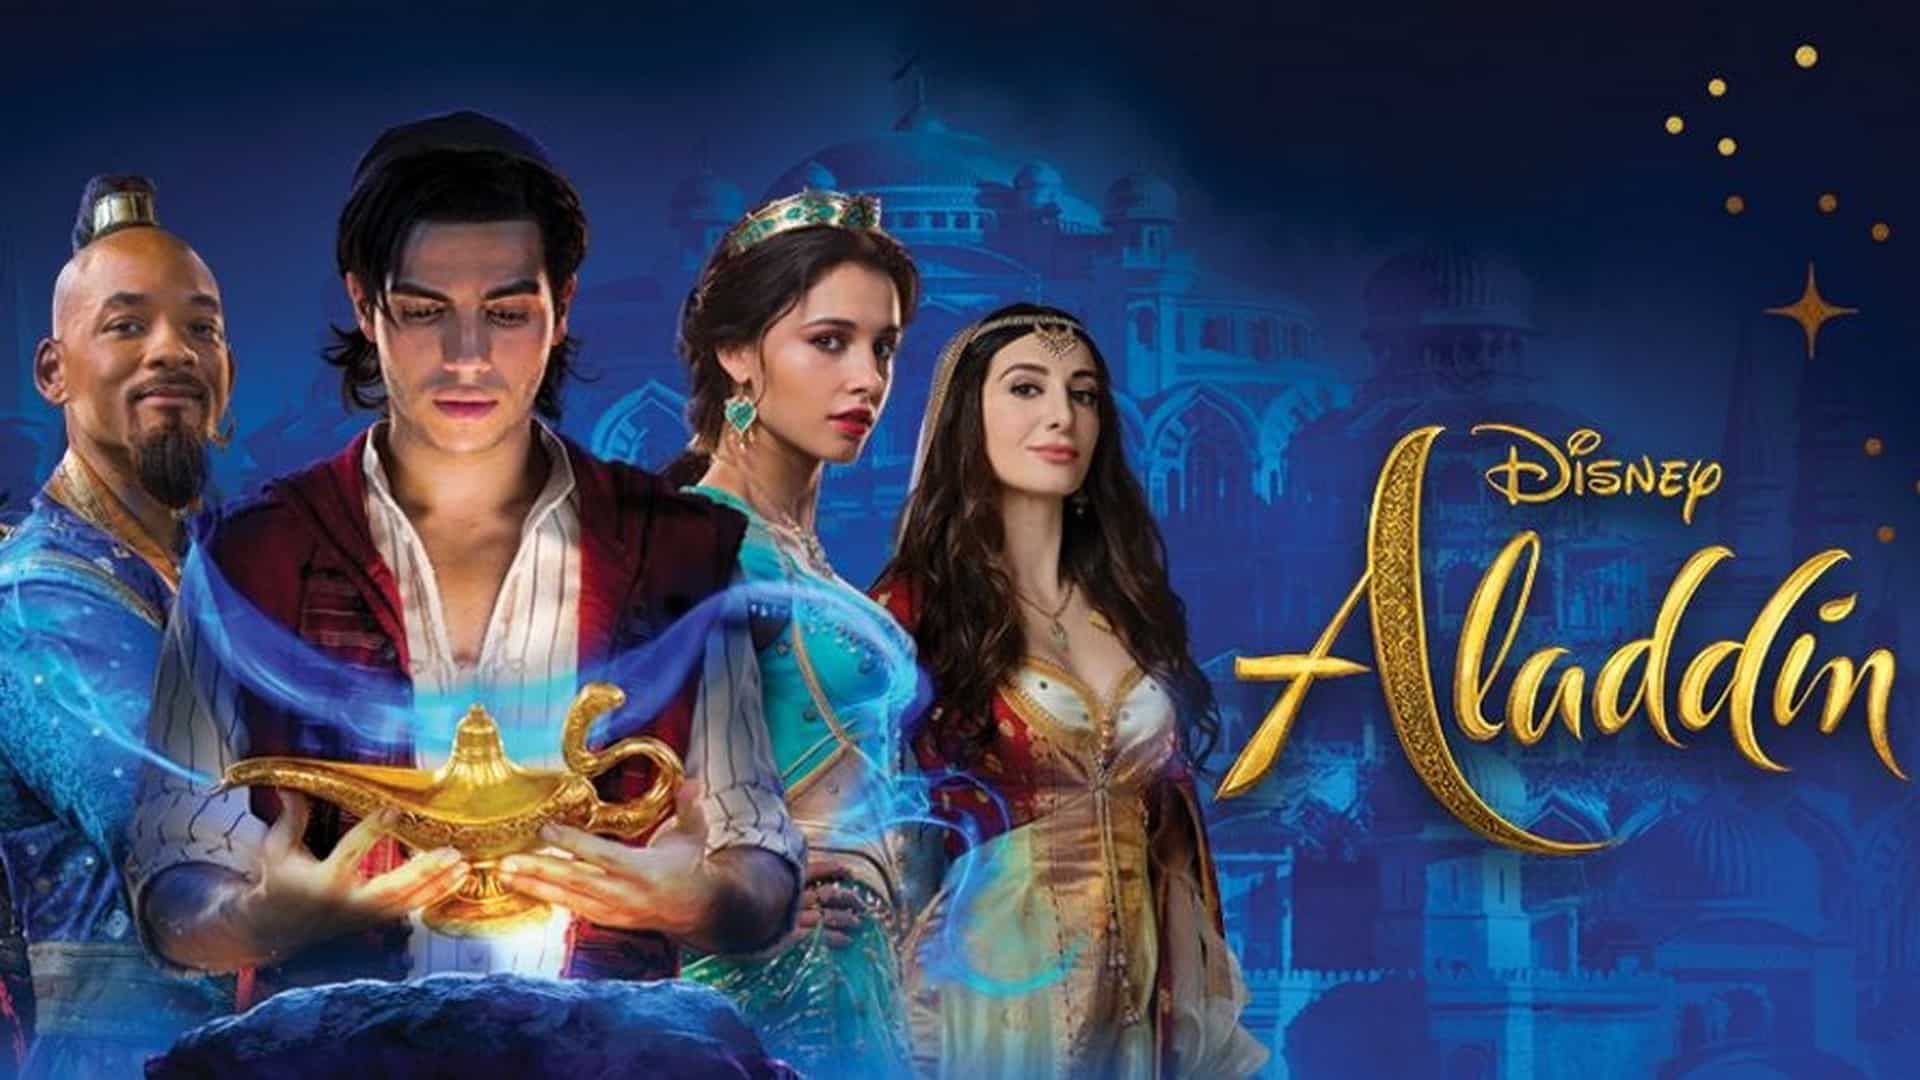 Aladdin recensione